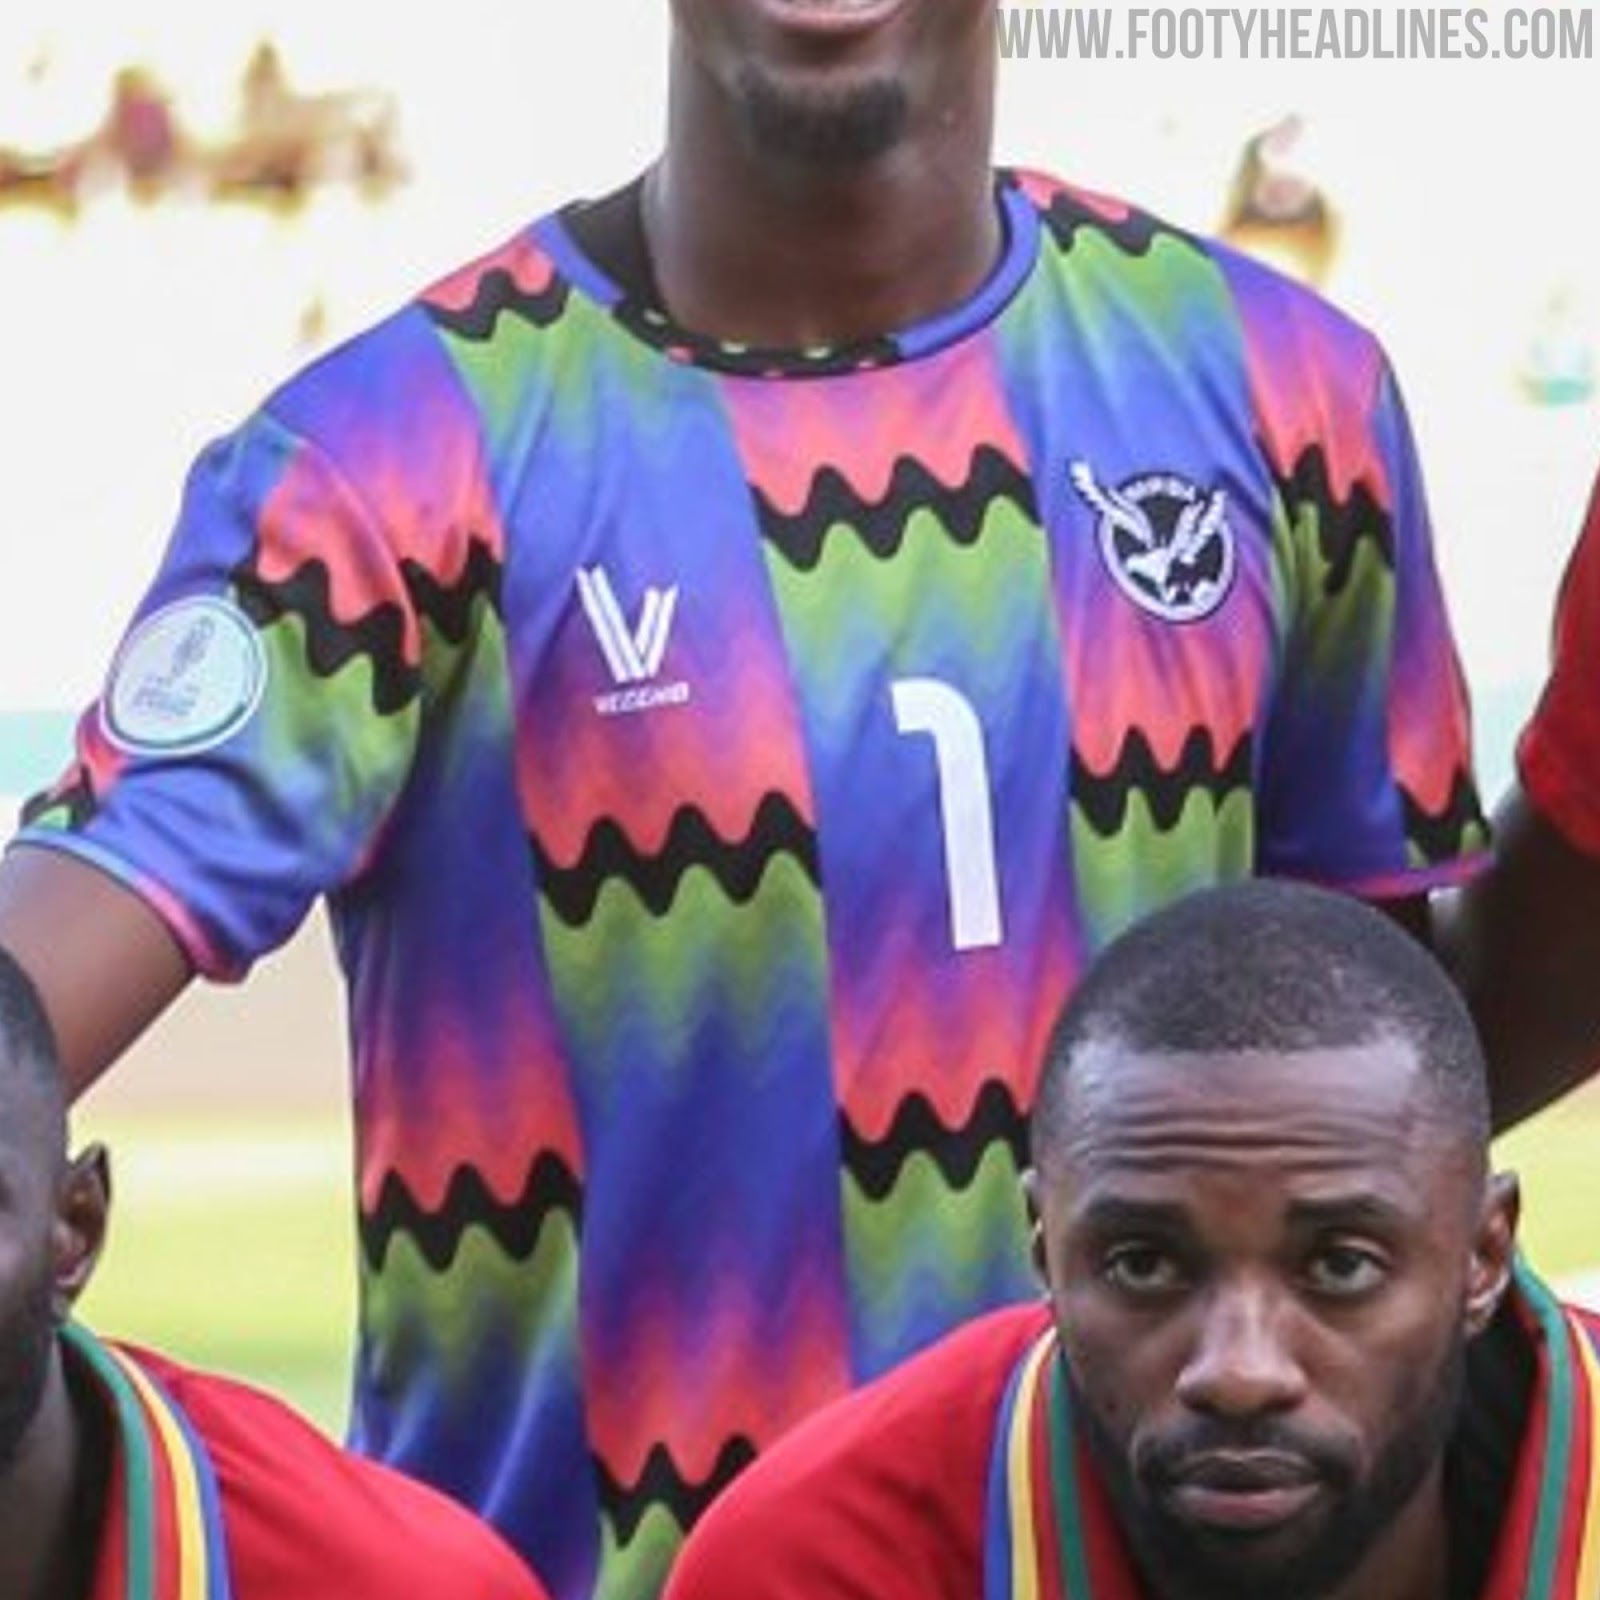 Camisa de goleiro da Seleção da Namíbia Reprodução / Footyheadlines